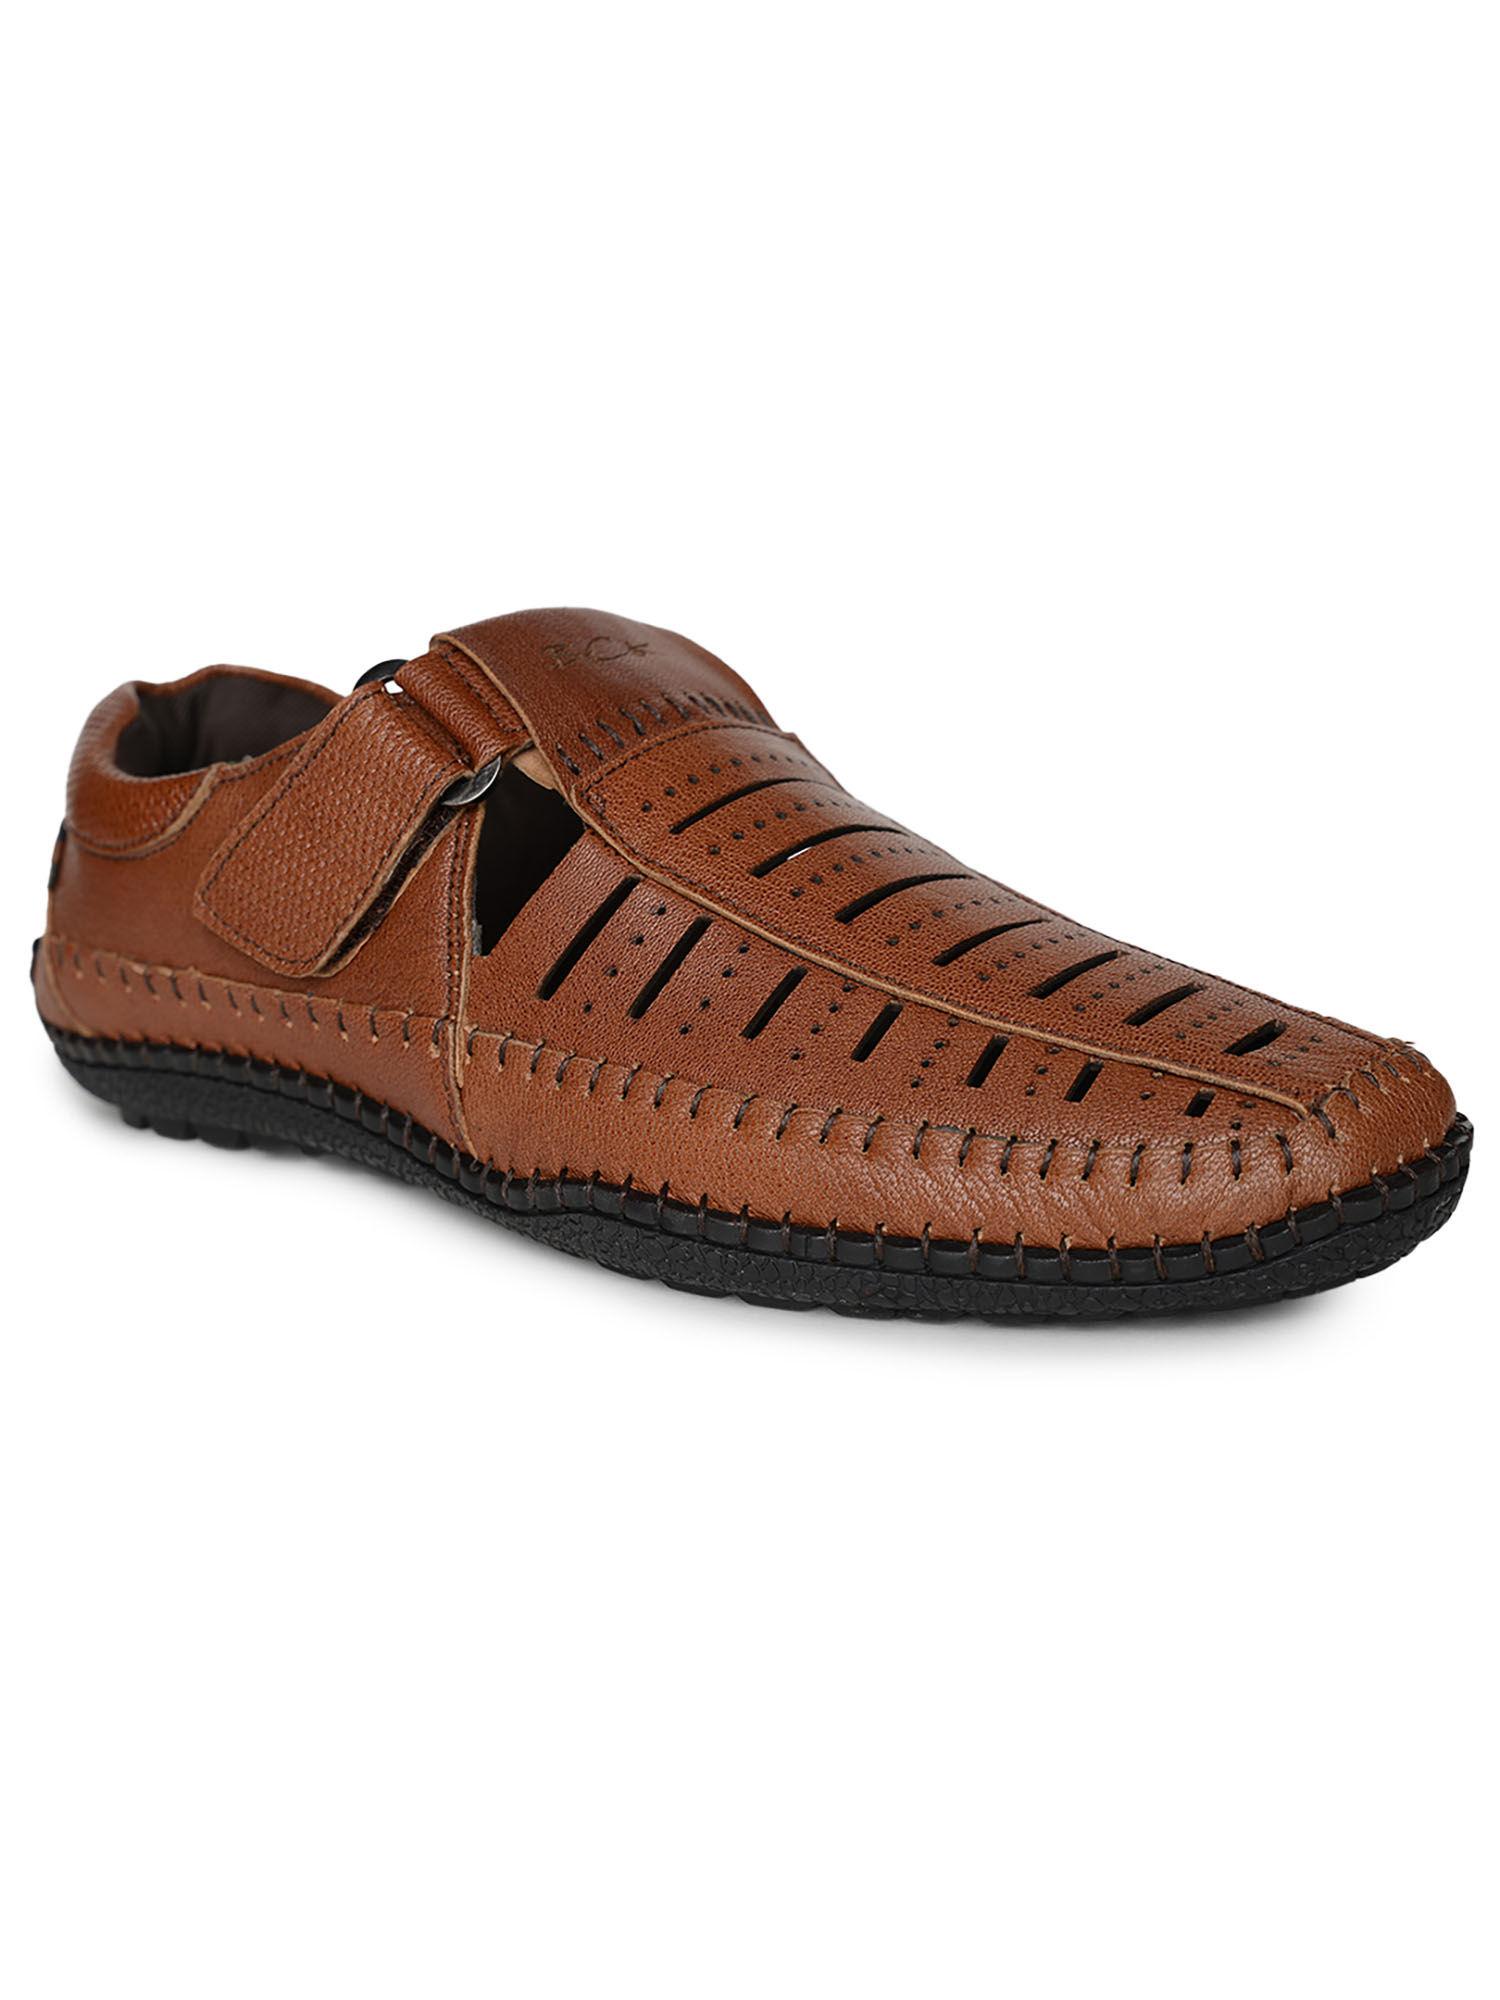 brak-full-grain-natural-leather-casual-open-sandals-tan